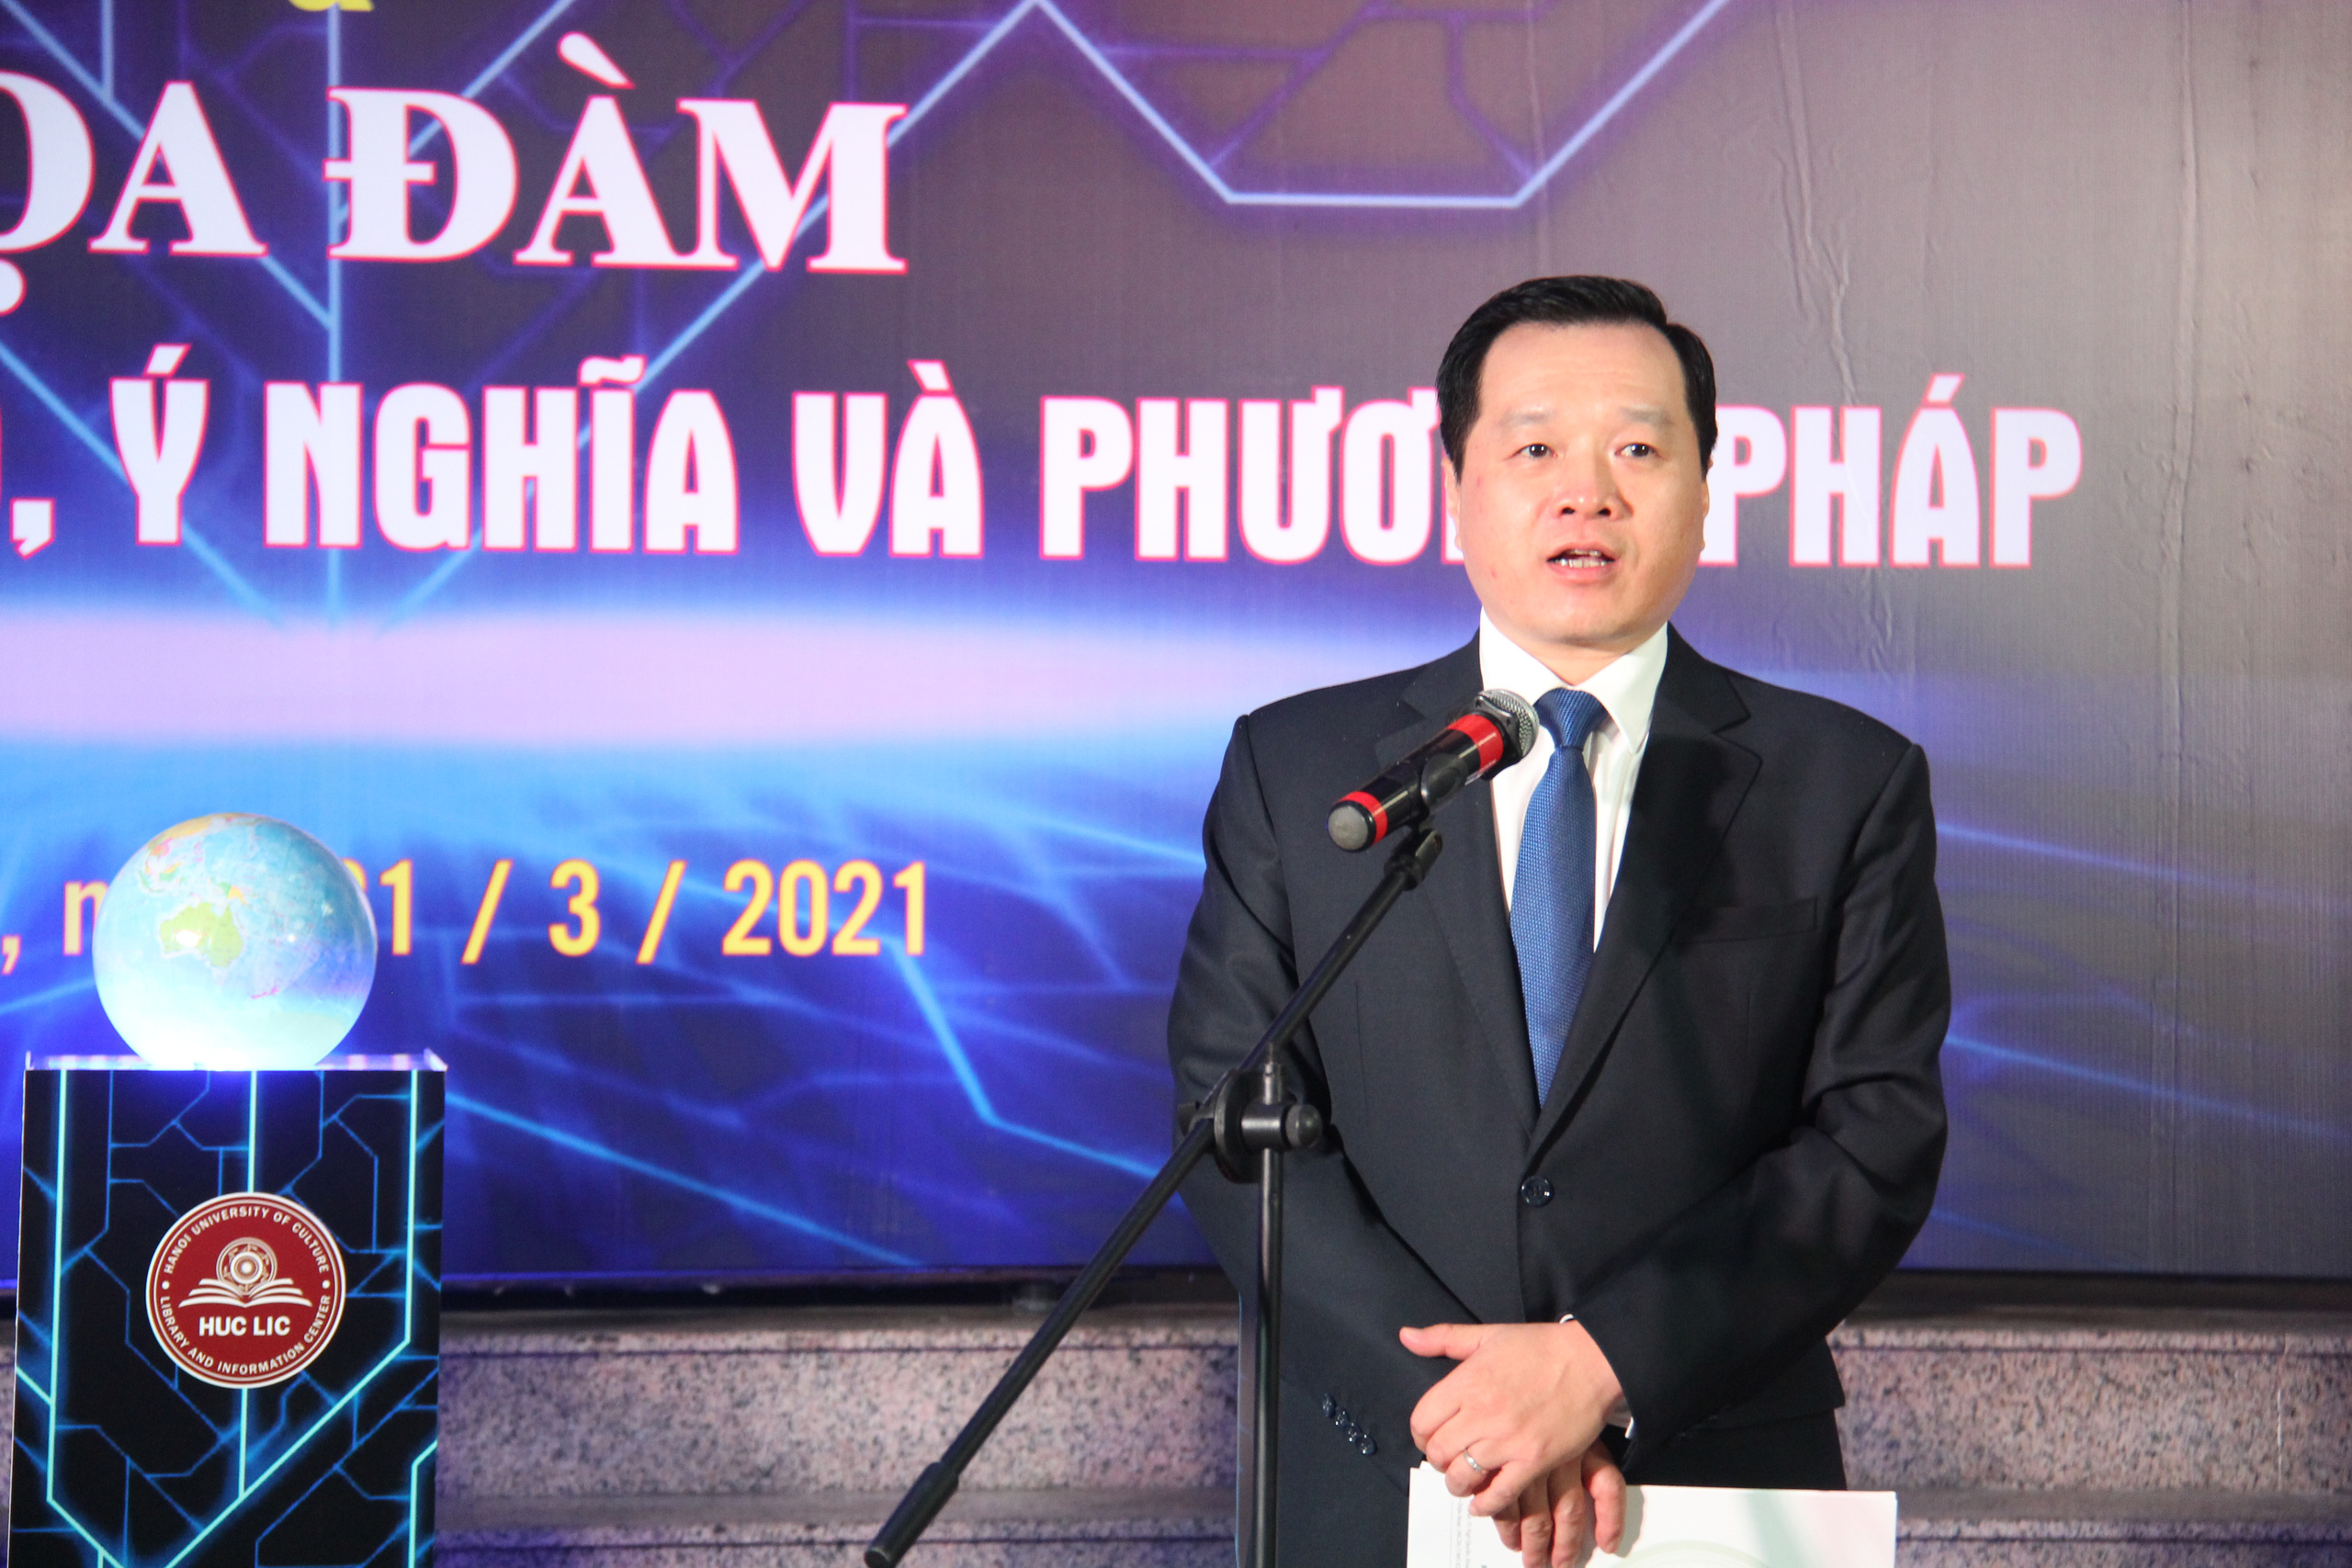 Đại học Văn hóa Hà Nội phát động Cuộc thi Đại sứ Văn hóa đọc năm 2021 - Ảnh 3.